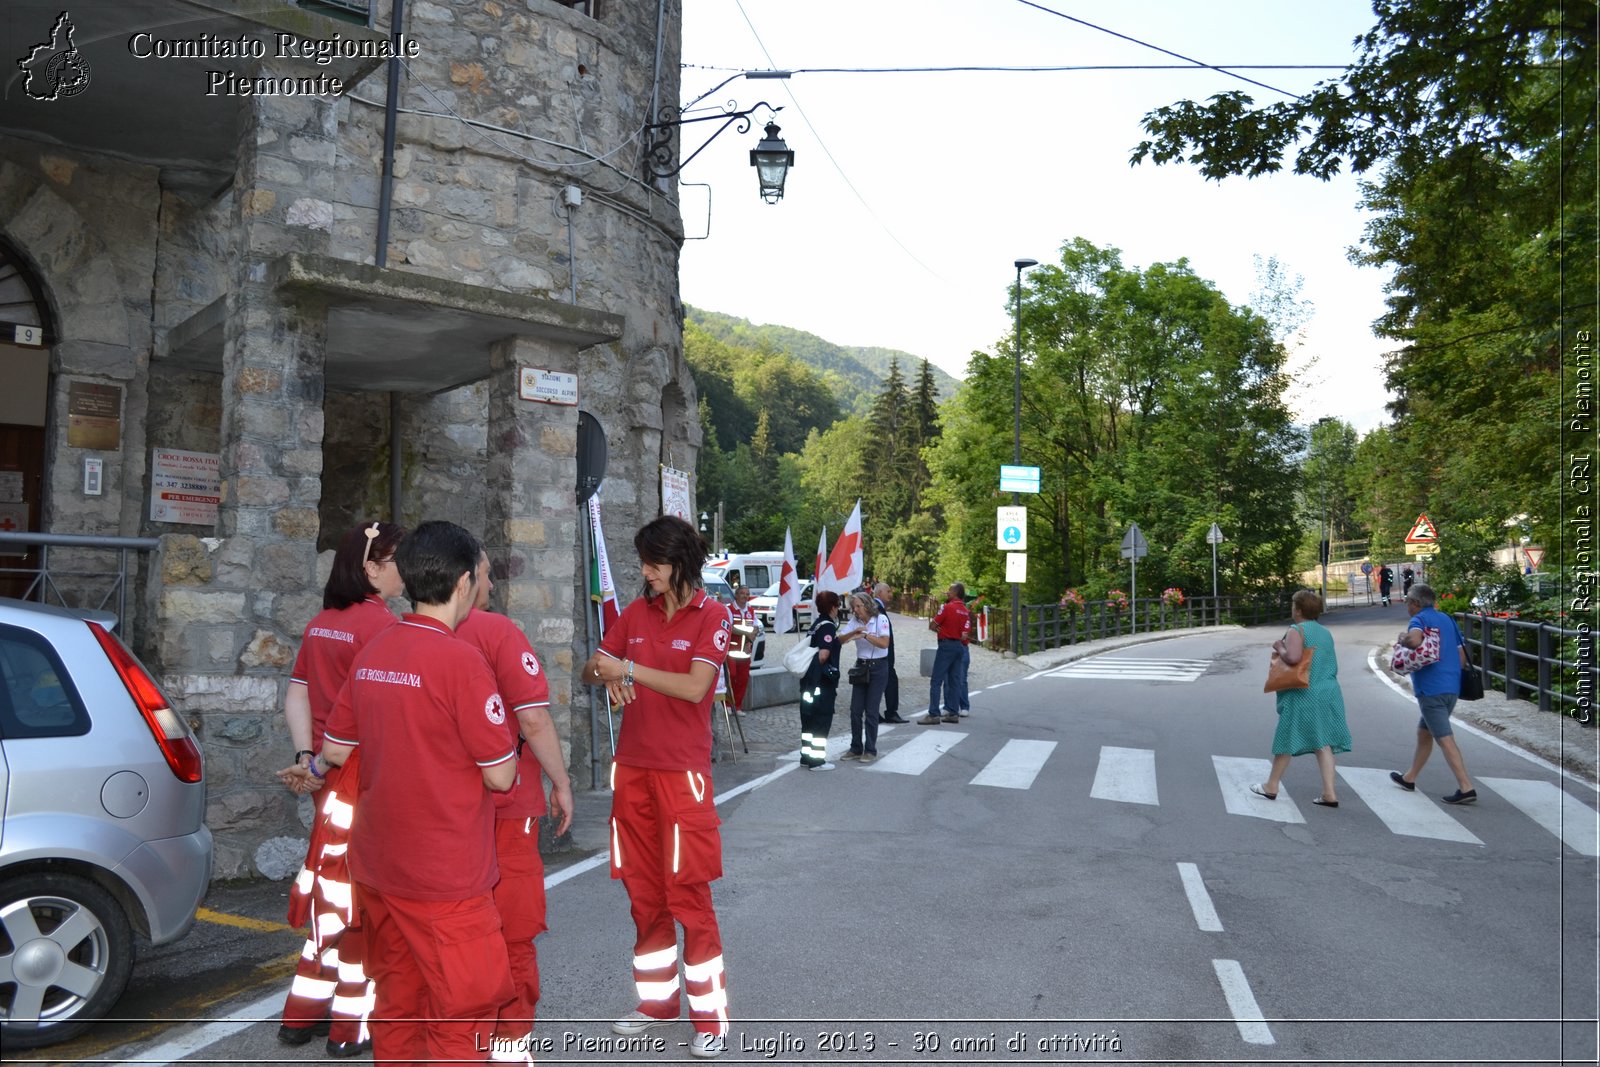 Limone Piemonte - 21 Luglio 2013 - 30 anni di attivit - Croce Rossa Italiana - Comitato Regionale del Piemonte